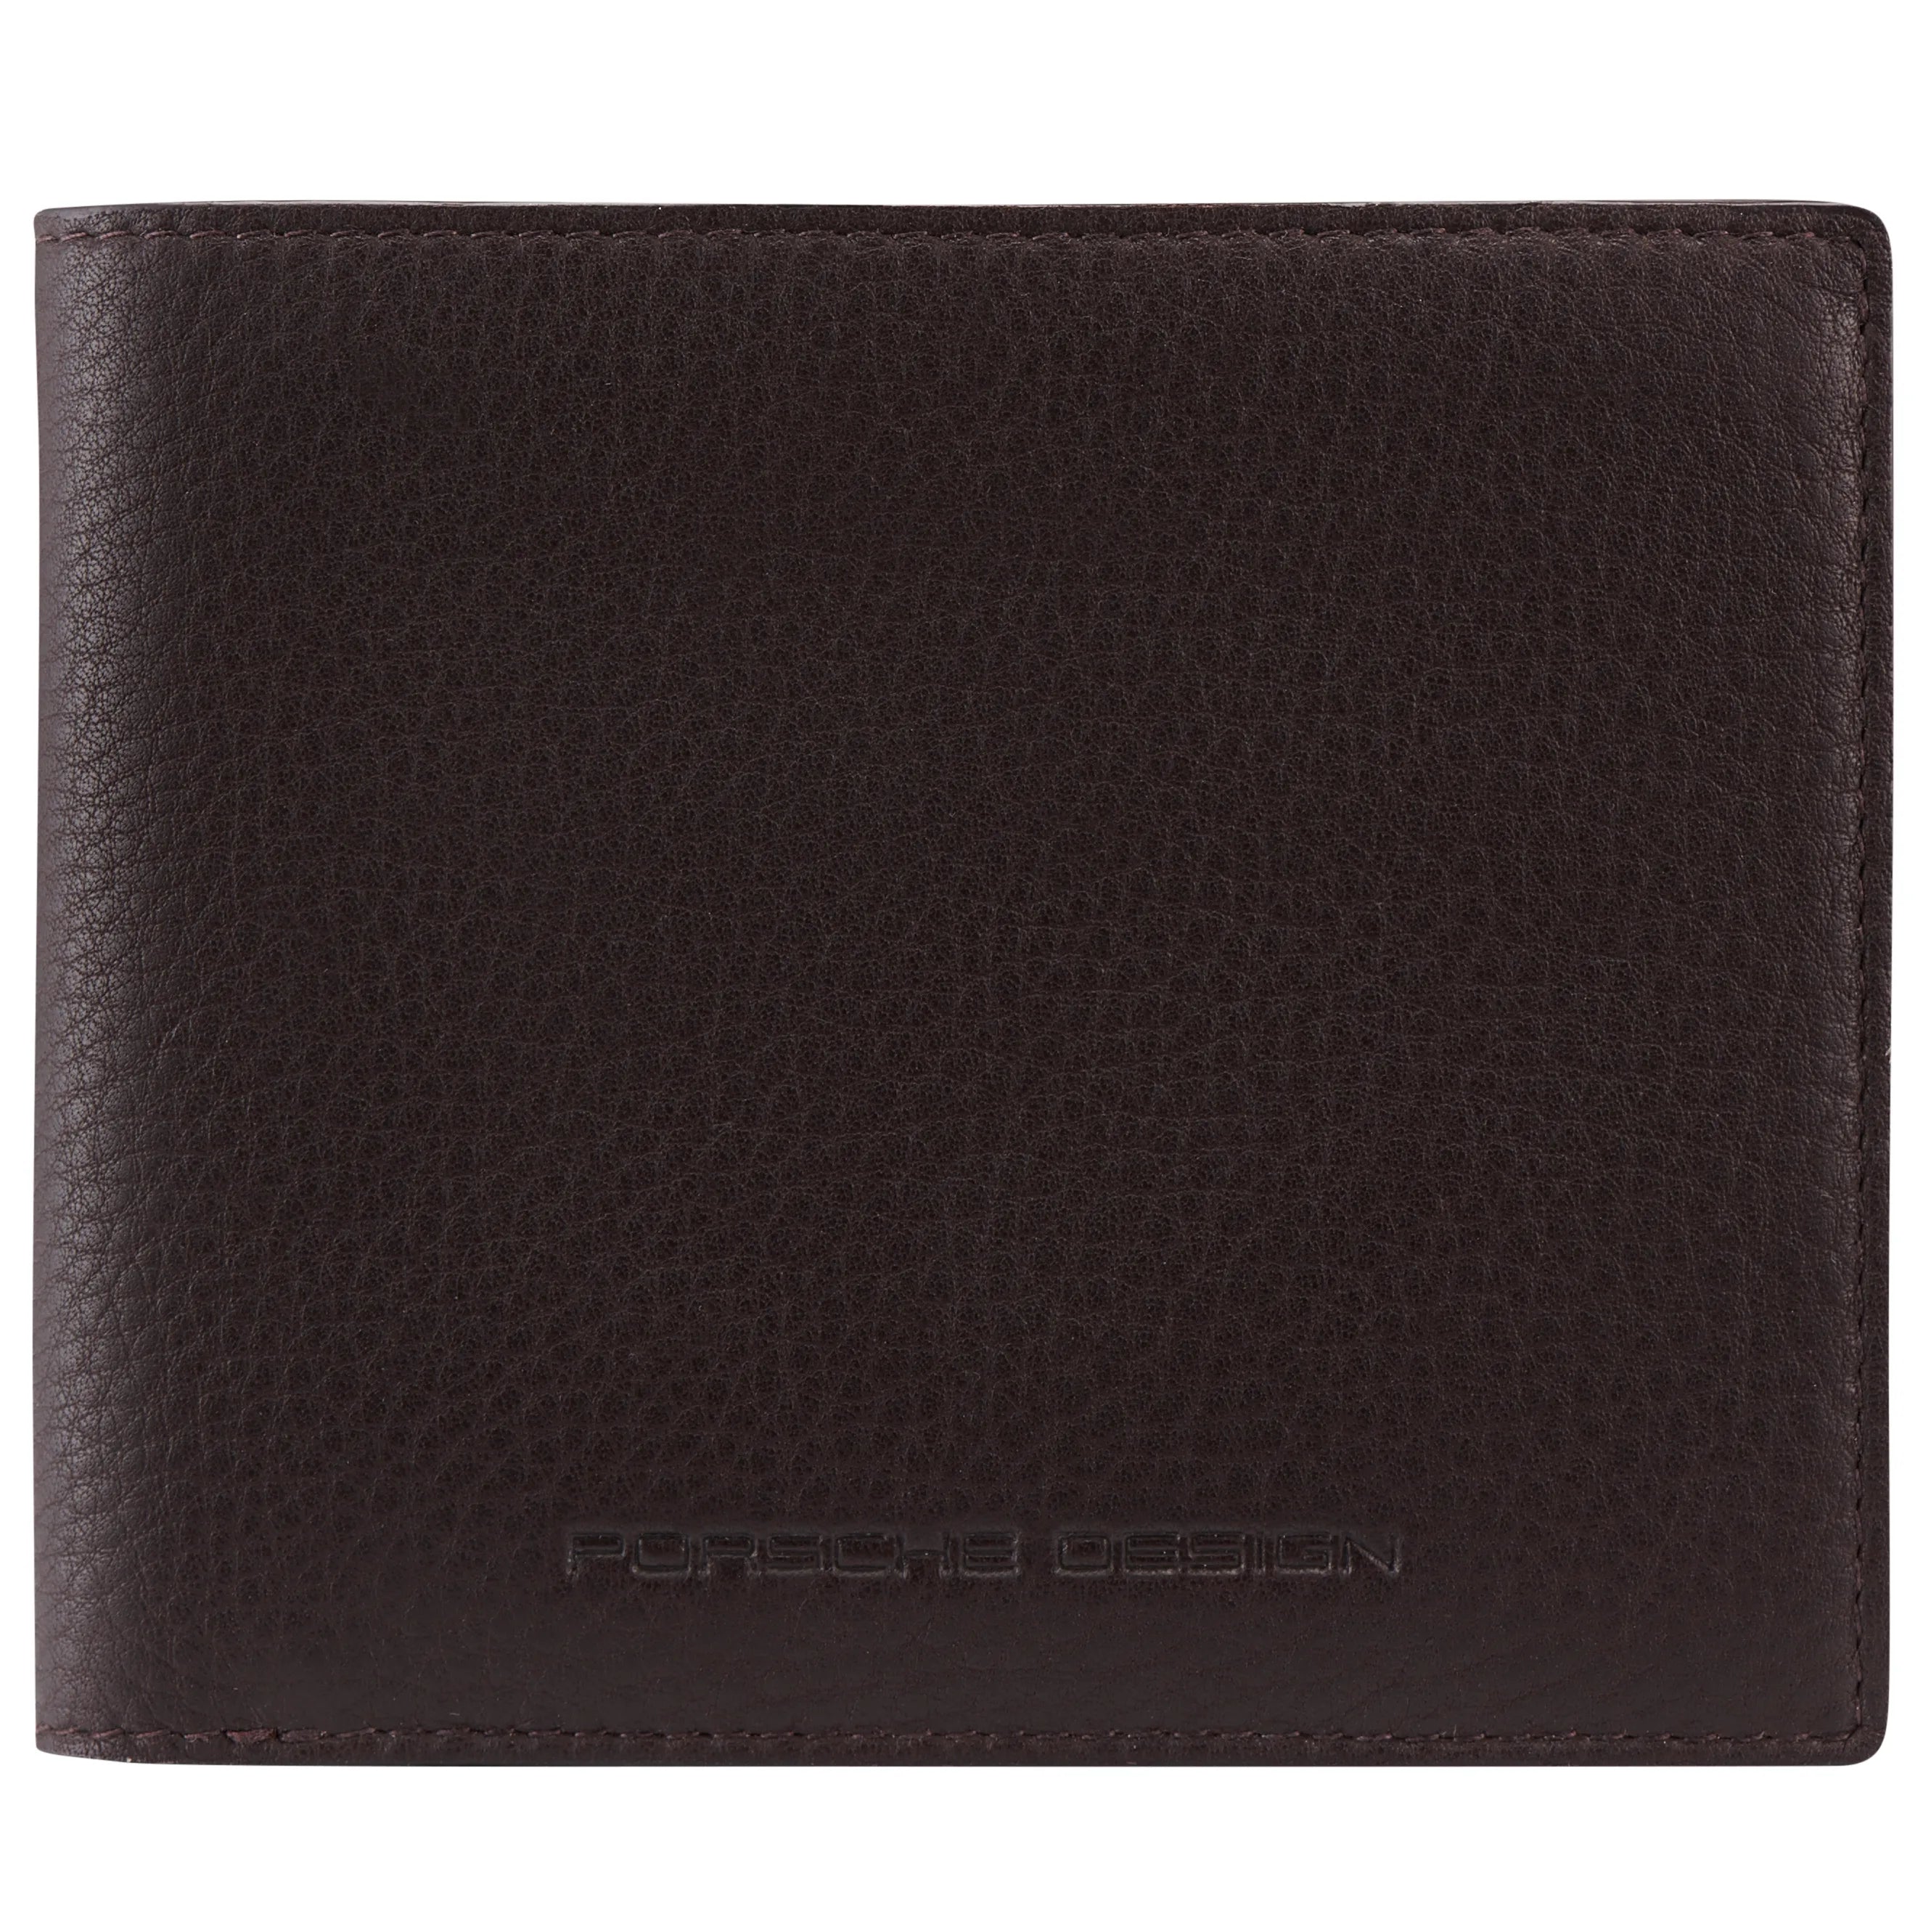 Porsche Design Accessories Business Wallet 4 RFID 11 cm - Dark Brown